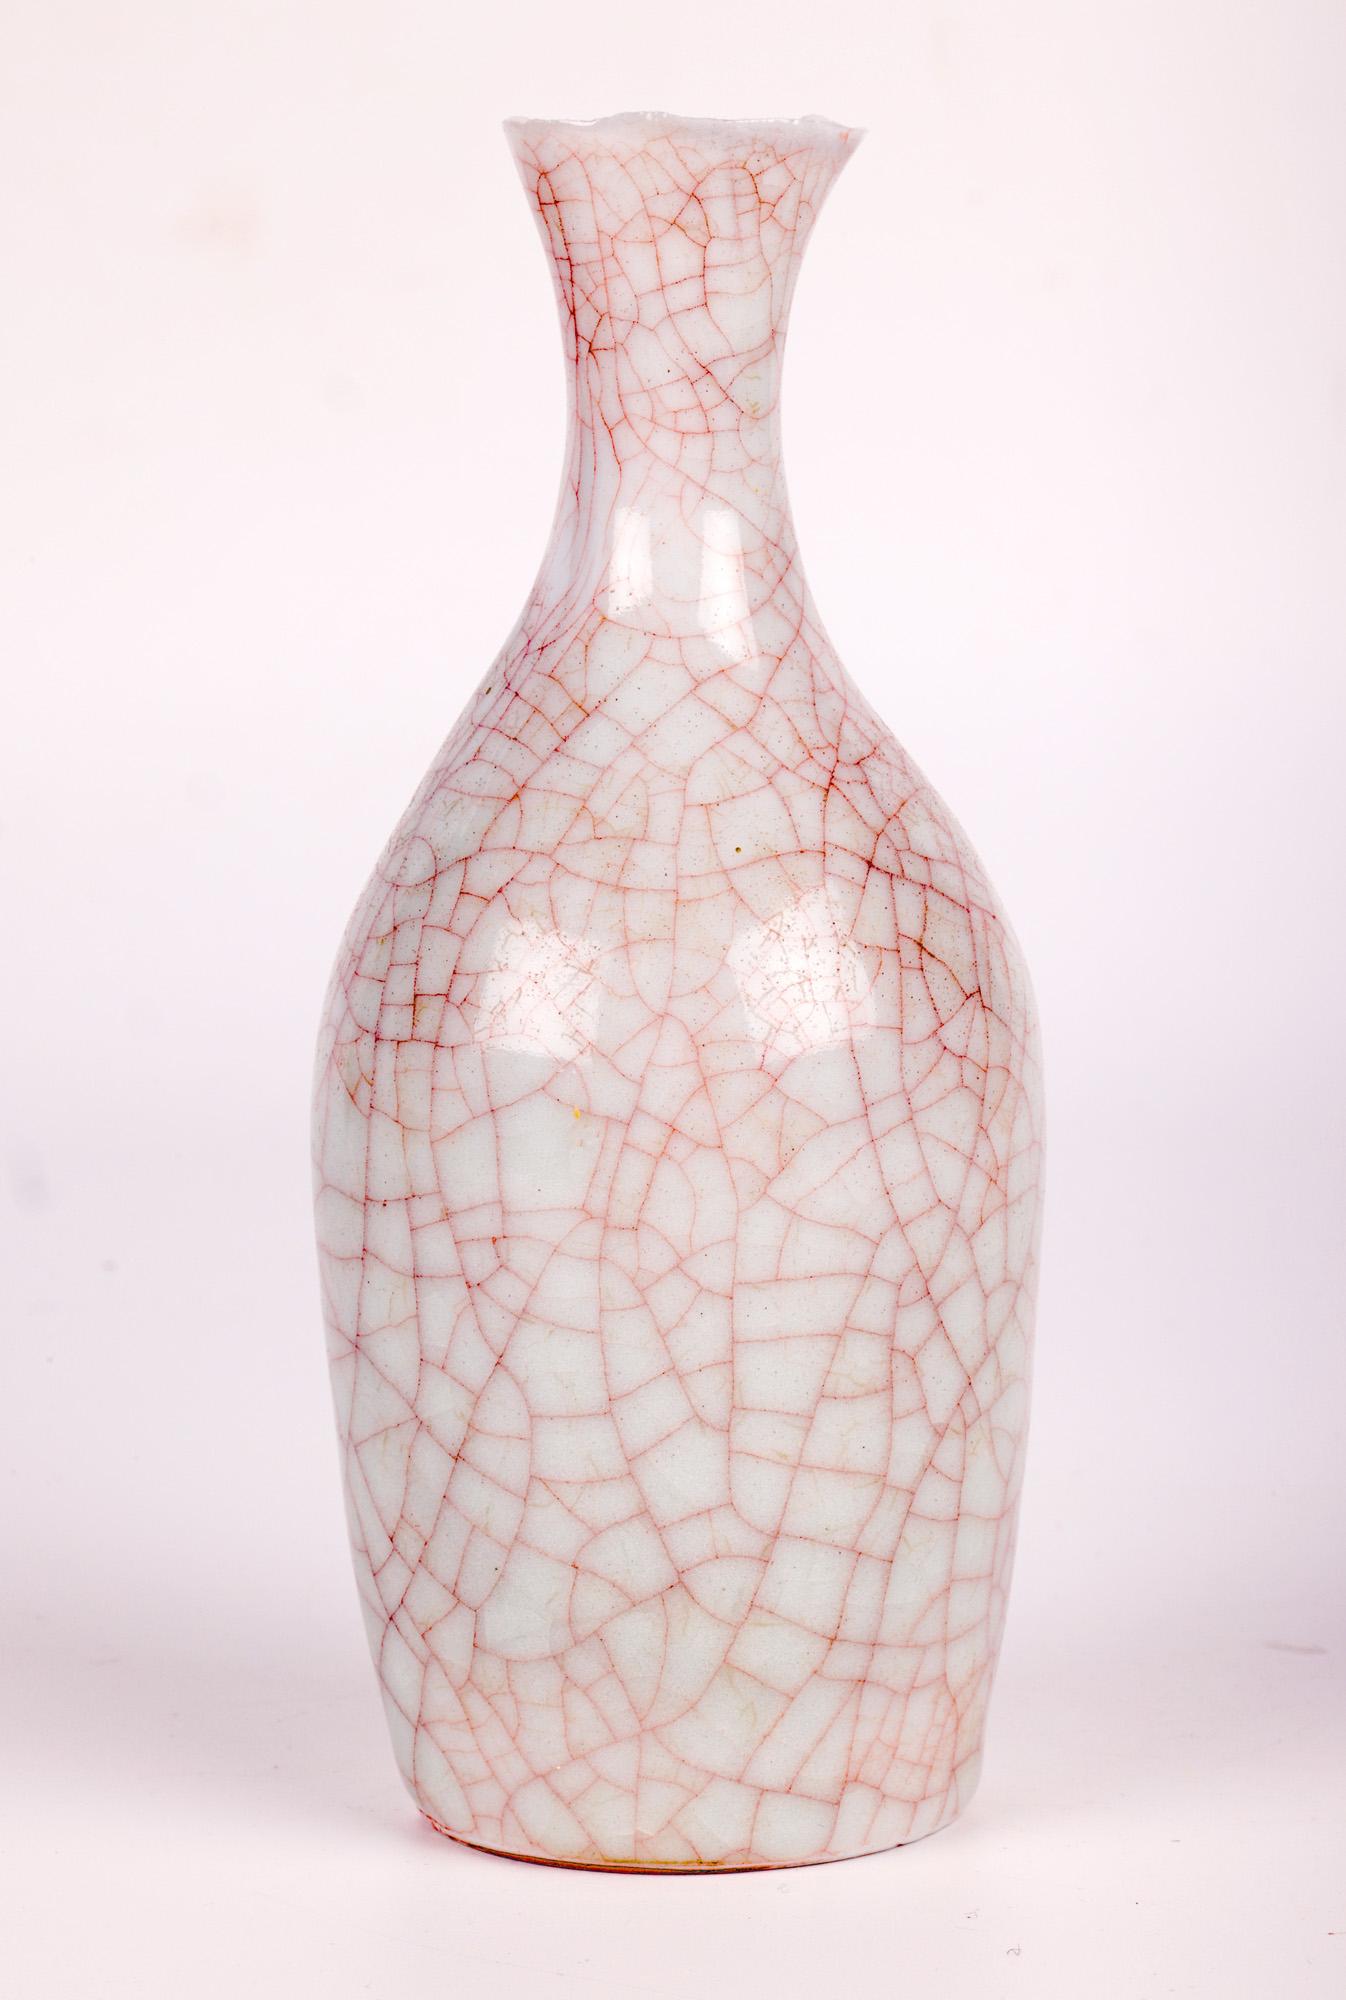 Sonia Lewis Studio Ceramic Craquelure Glazed Bottle Vase For Sale 5